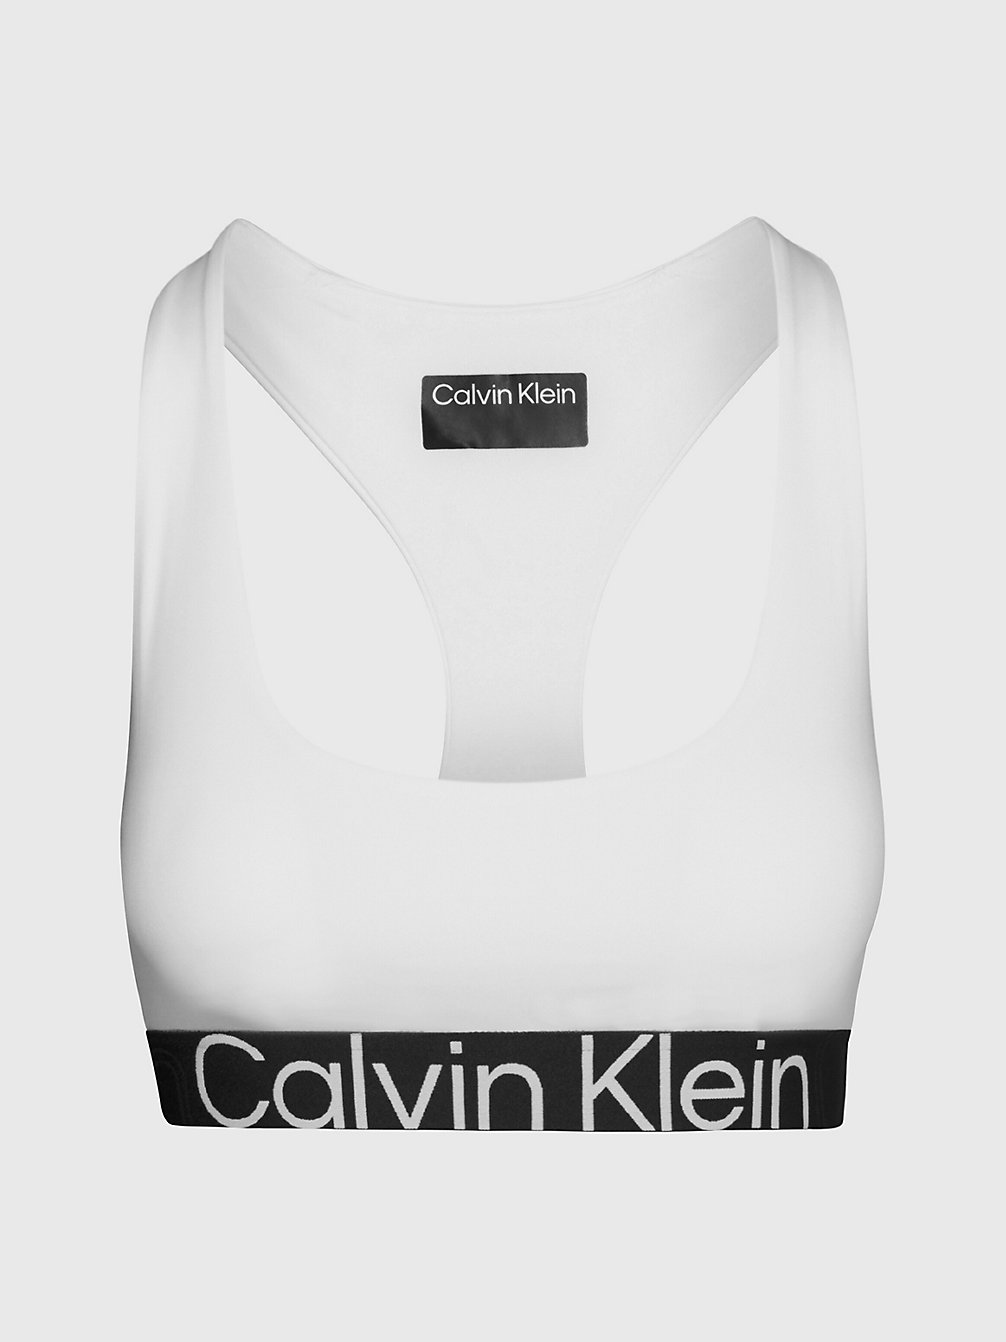 BRIGHT WHITE Brassière De Sport Impacts Modérés undefined femmes Calvin Klein